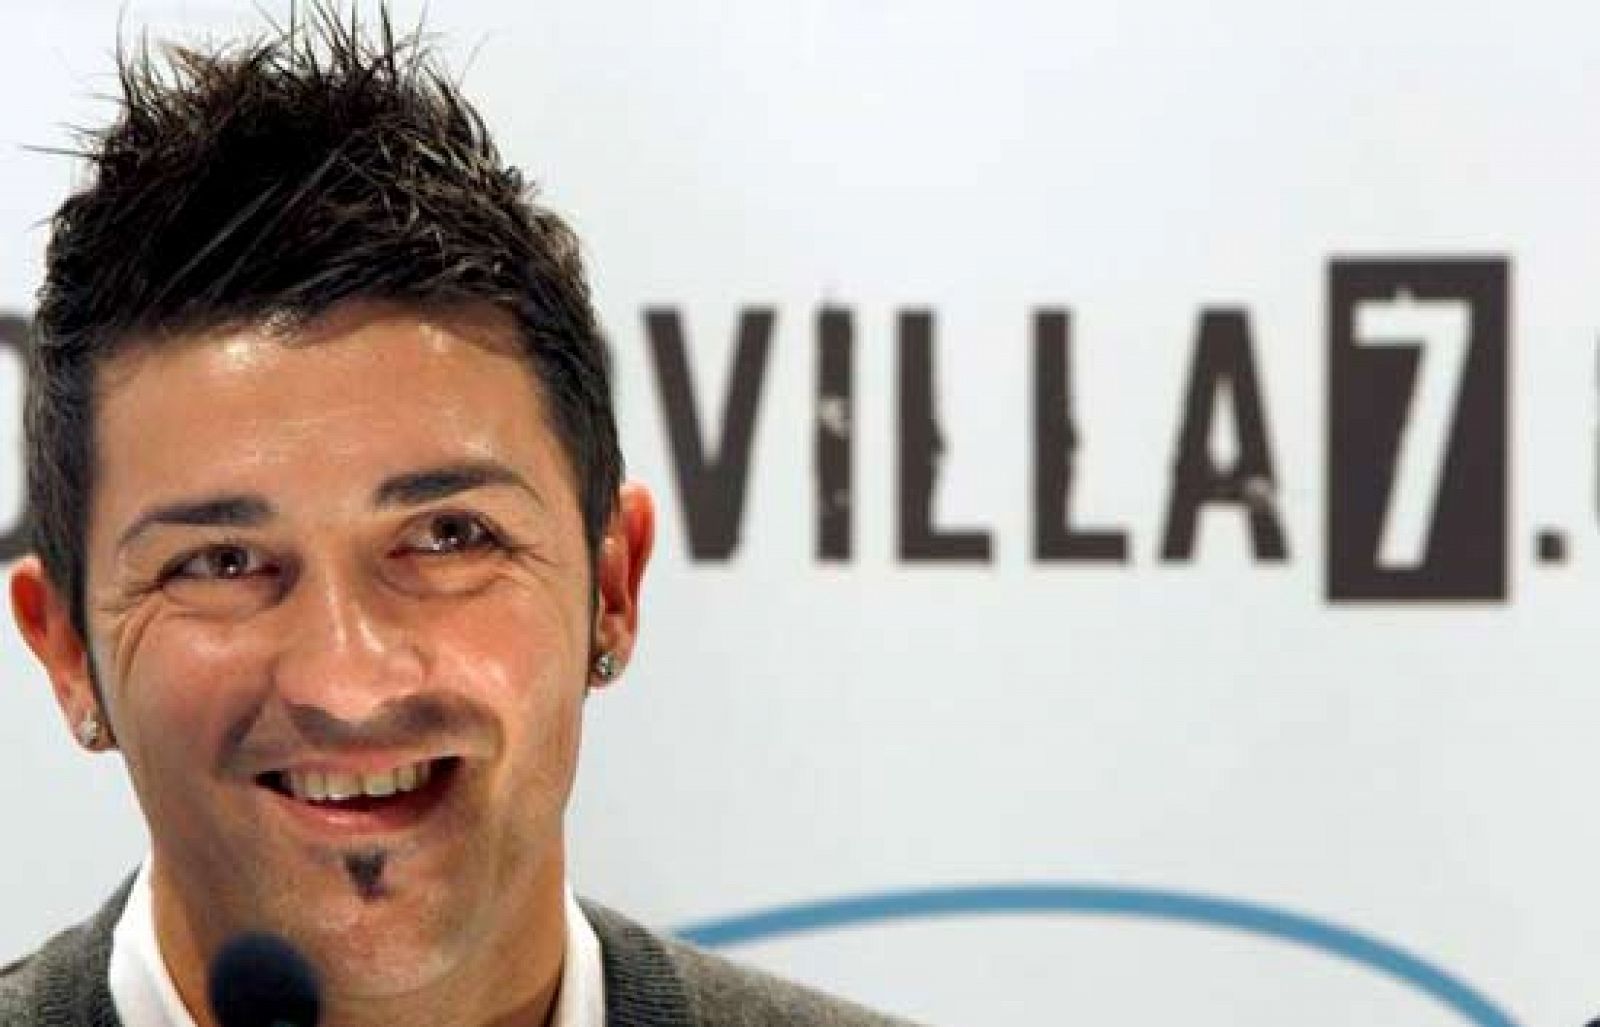  El delantero del Valencia, David Villa, será una de las mayores preocupaciones del Real Madrid en el encuentro que enfrentará a ambos equipos.